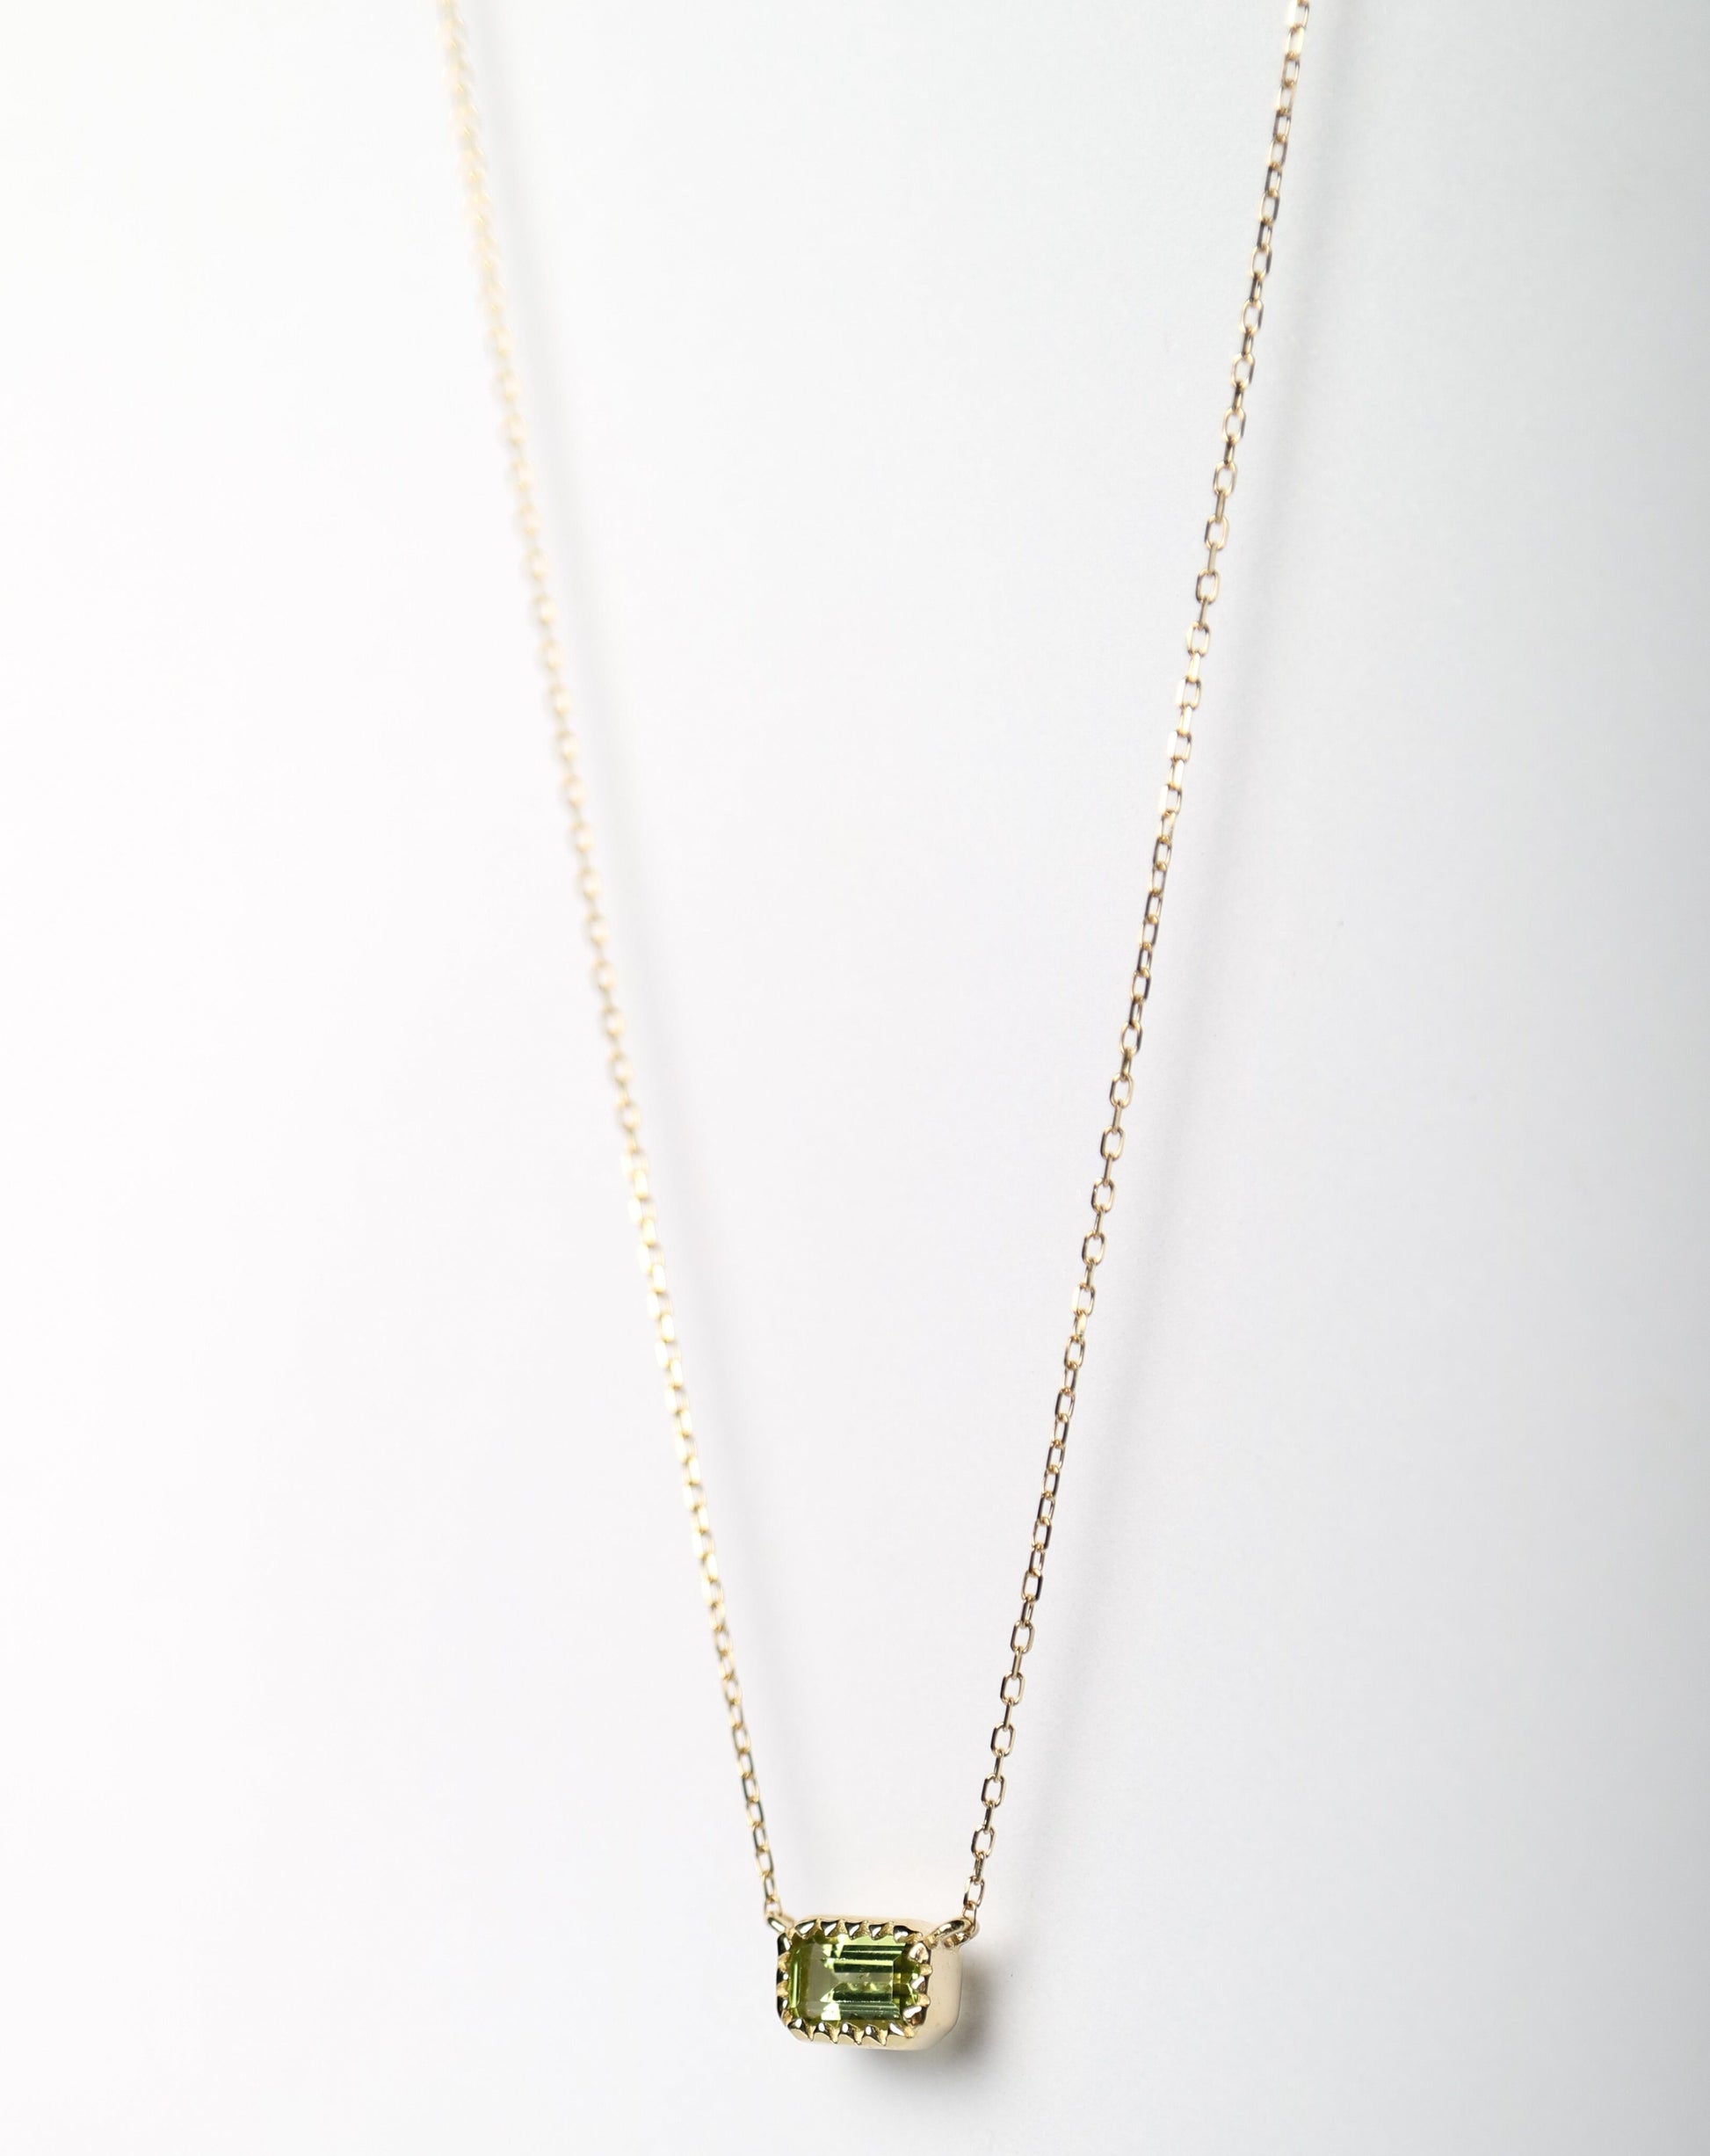 9kt gold Pendant with baguette-cut olivine pendant